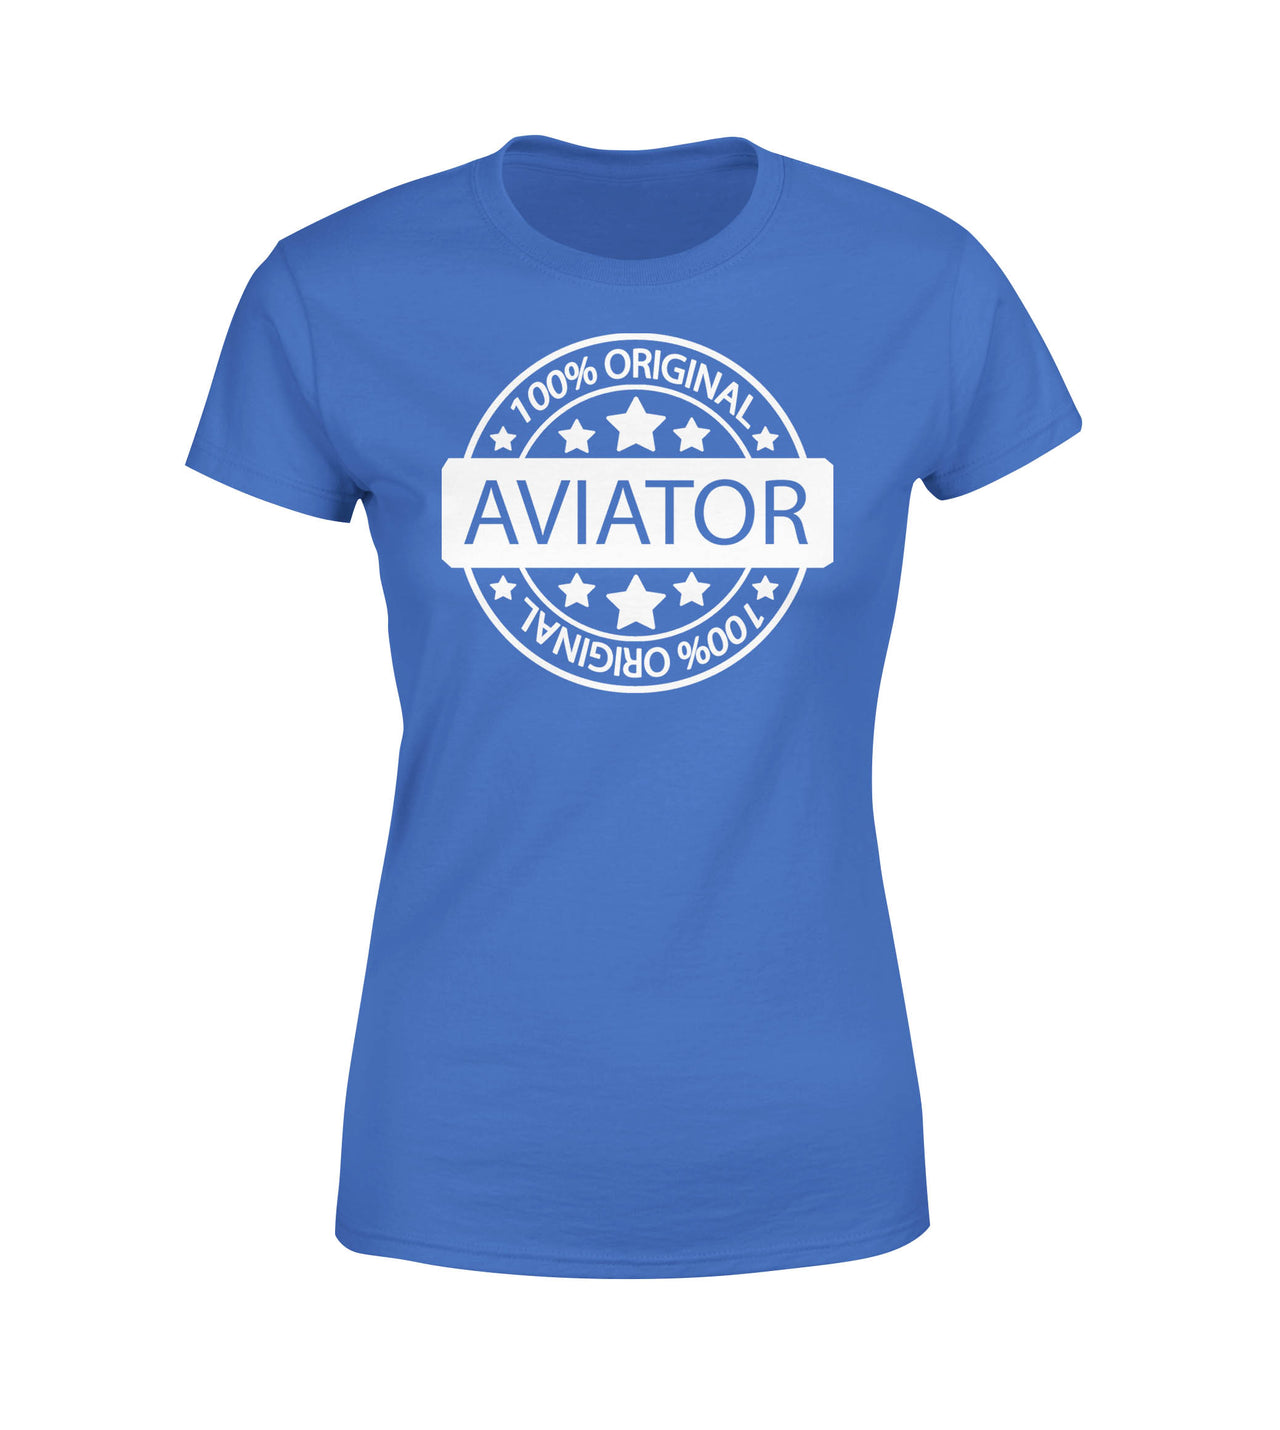 %100 Original Aviator Designed Women T-Shirts